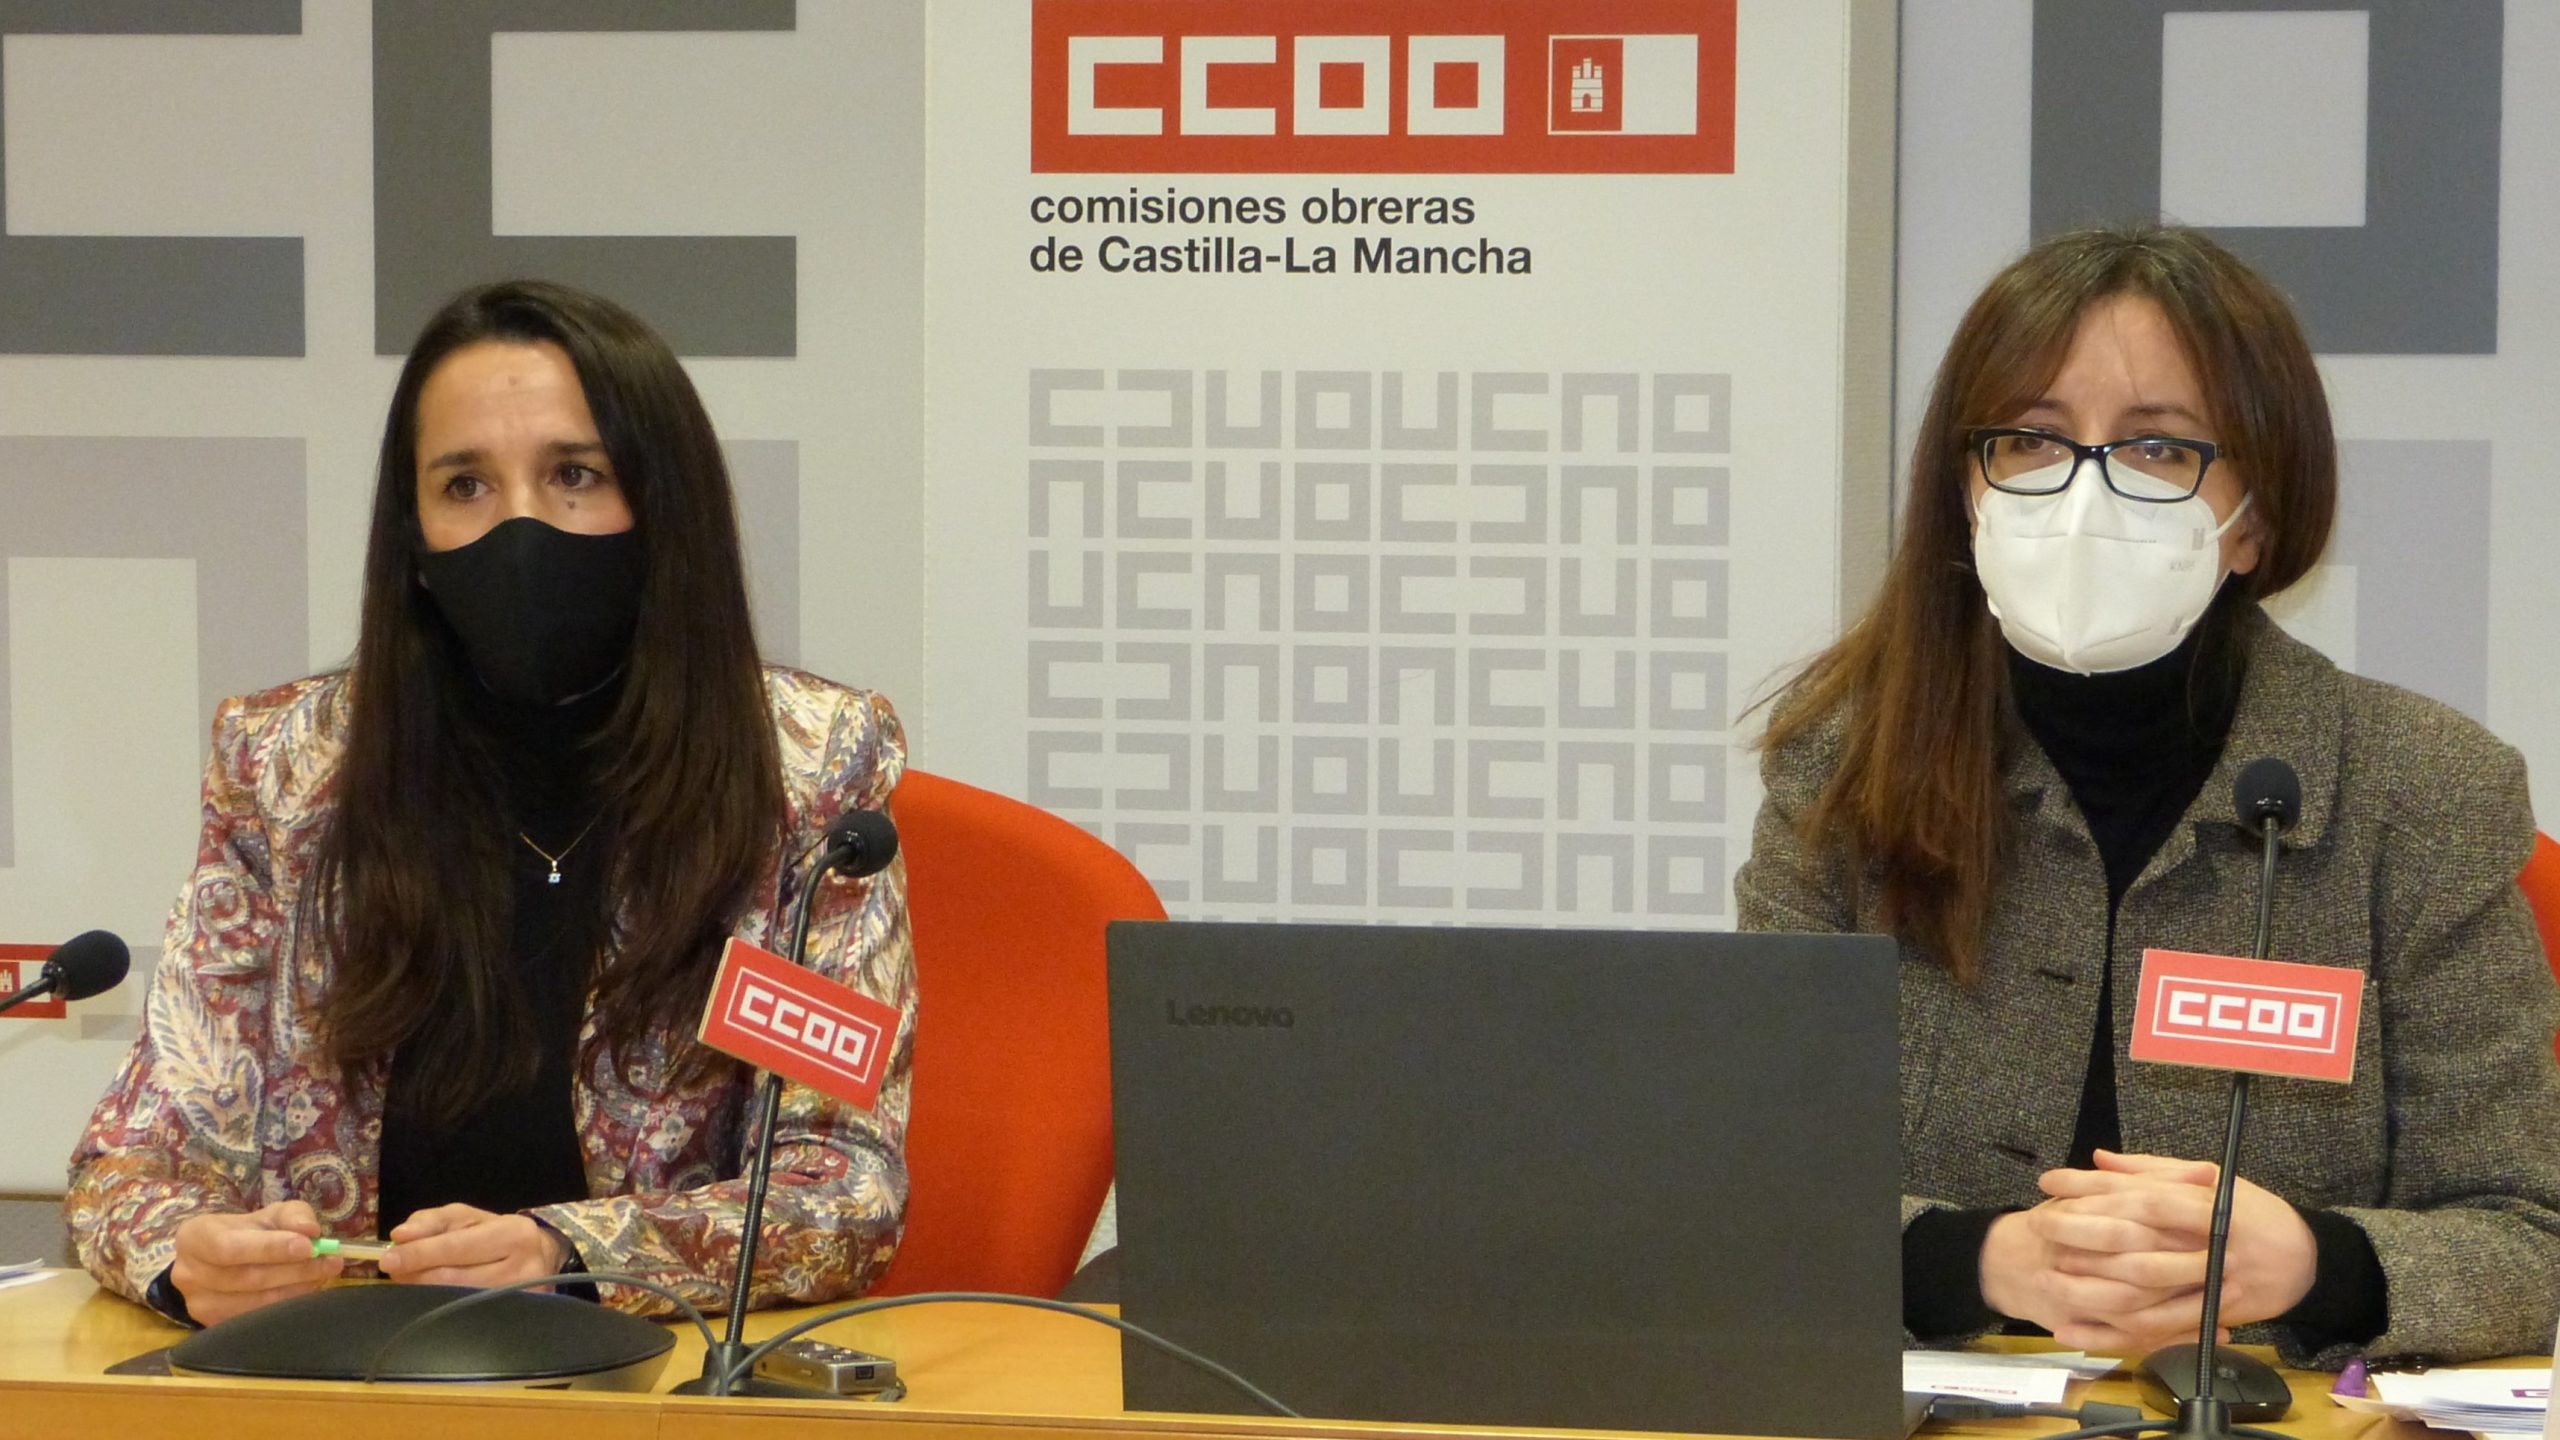 Presentación del informe de CCOO sobre la brecha salarial en Castilla-La Mancha el 22 de febrero de 2021.